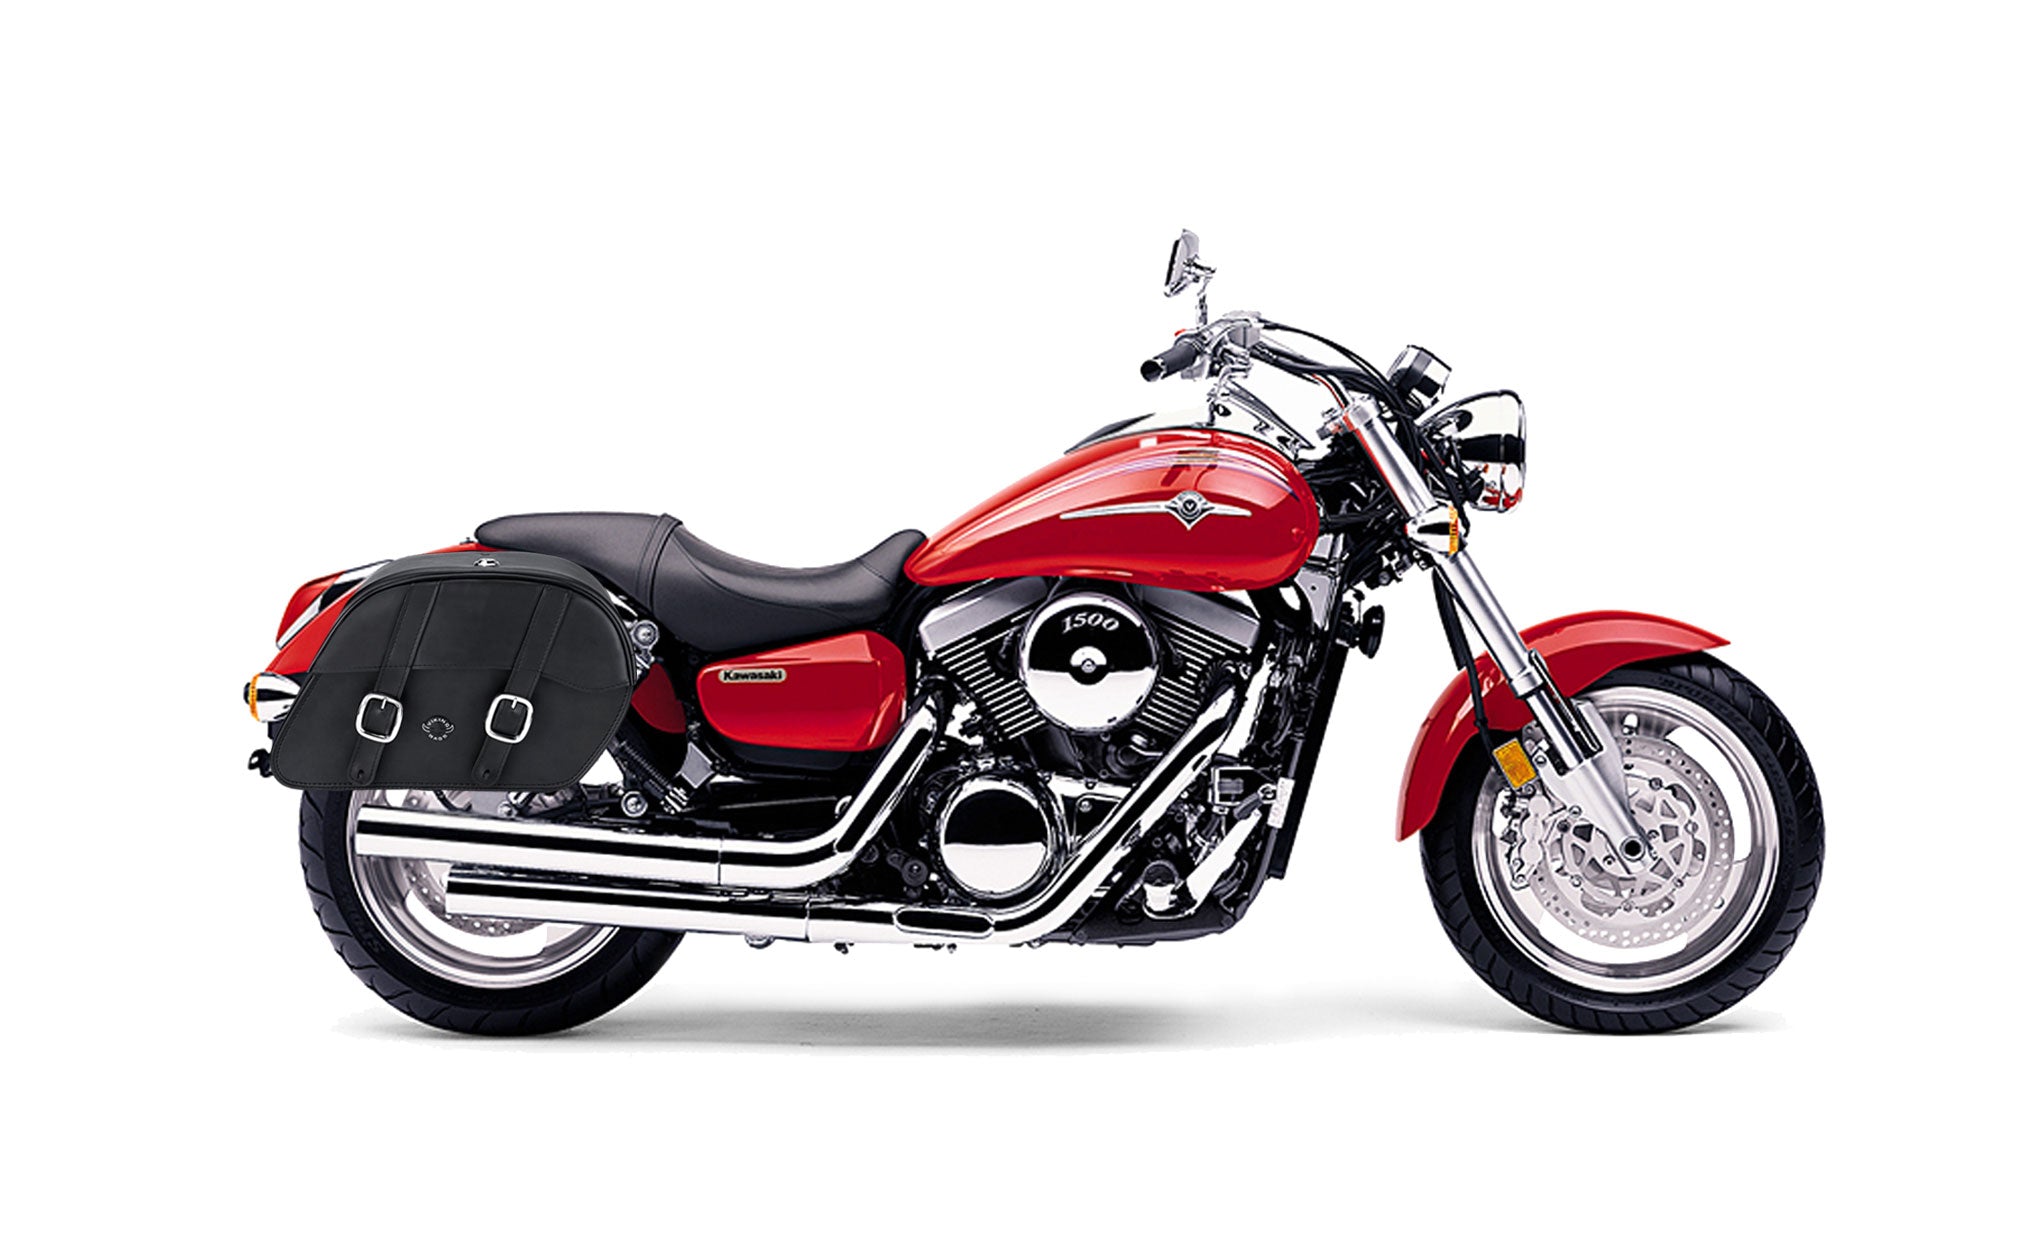 Viking Skarner Large Kawasaki Mean Streak 1500 Leather Motorcycle Saddlebags on Bike Photo @expand